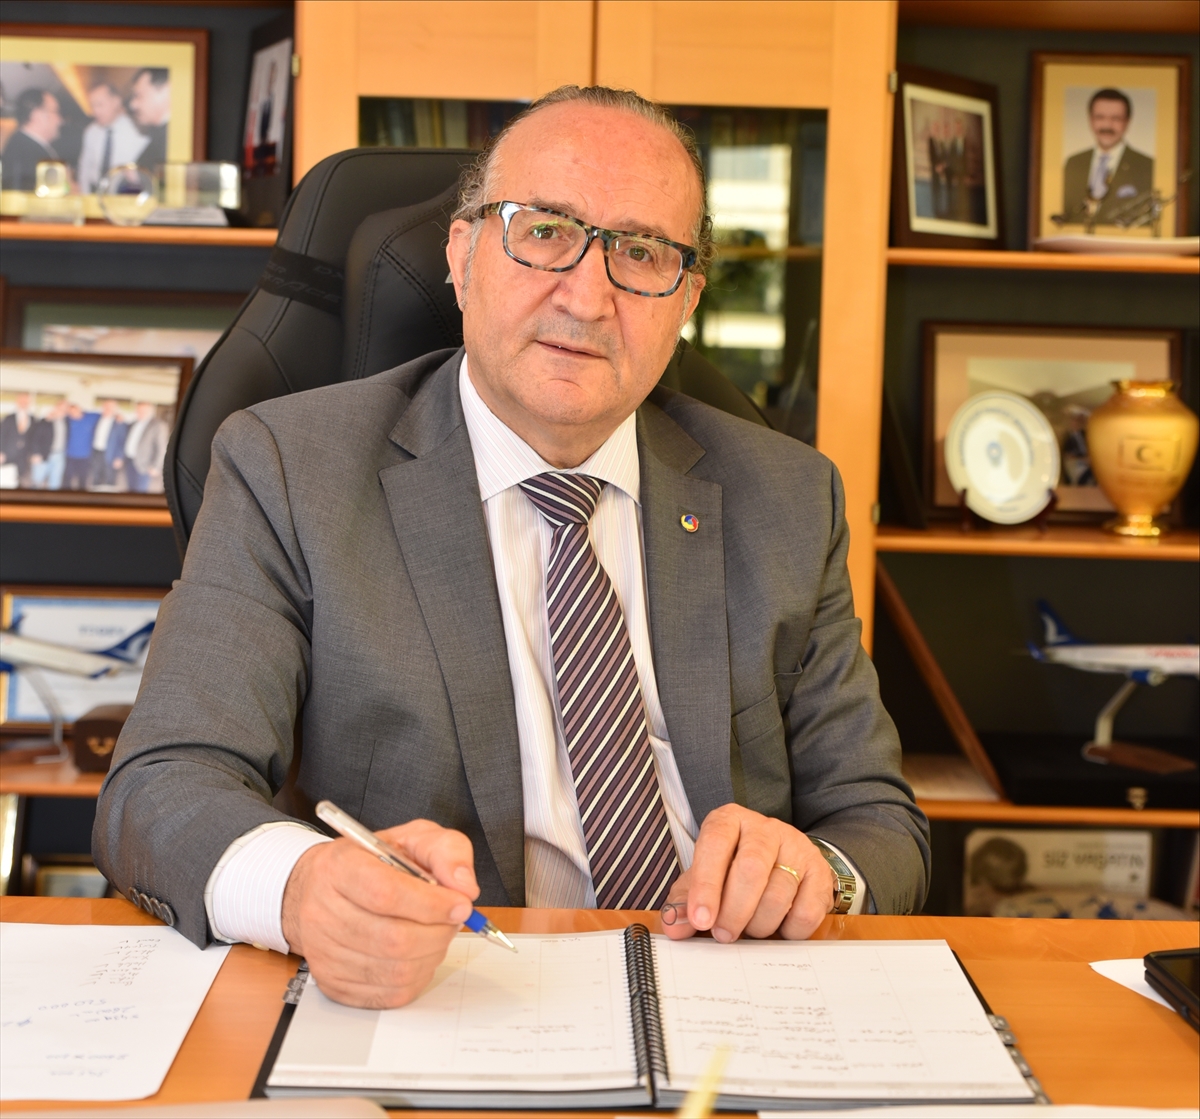 KSO Başkanı Zeytinoğlu, ekim ayı kapasite kullanım oranını değerlendirdi: